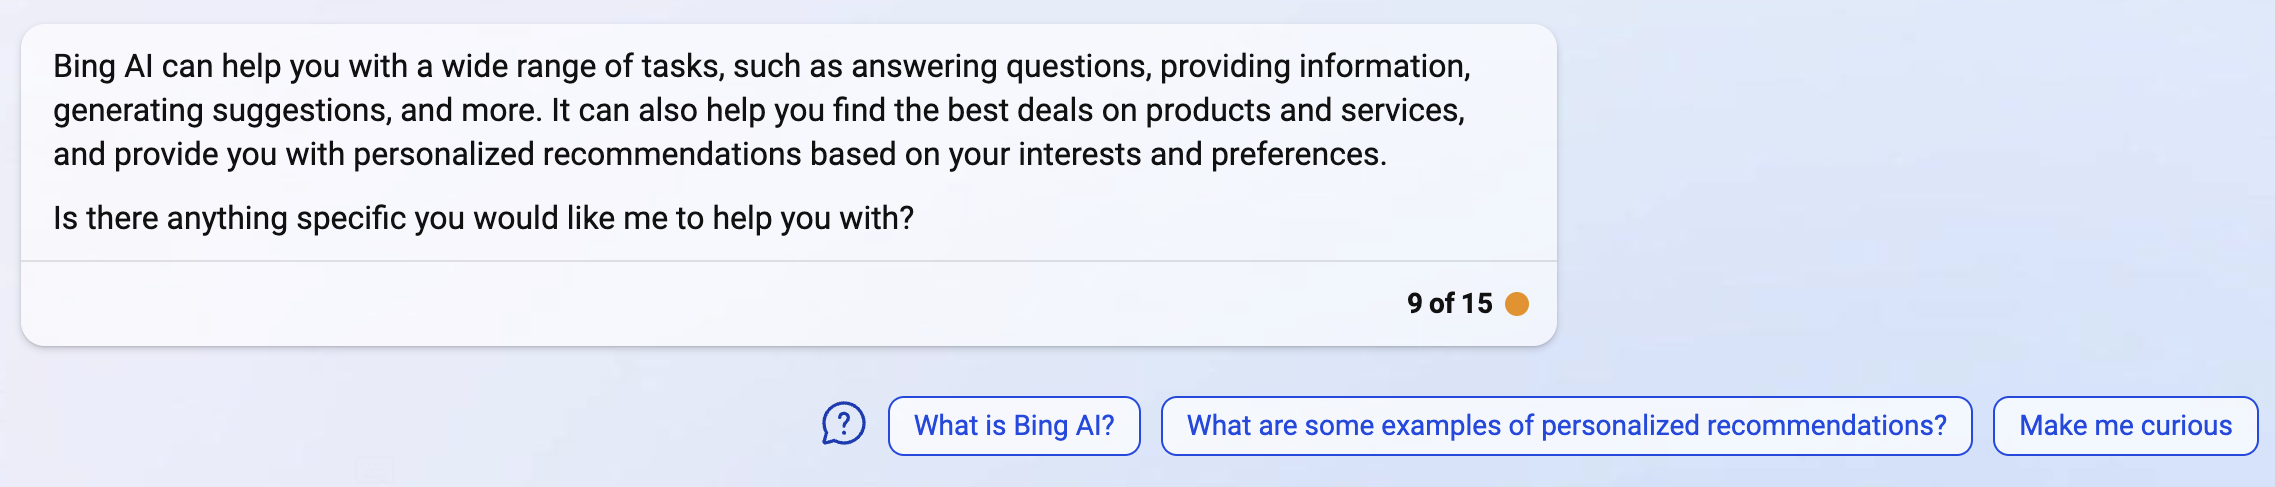 Bing Ai Main Capabilities